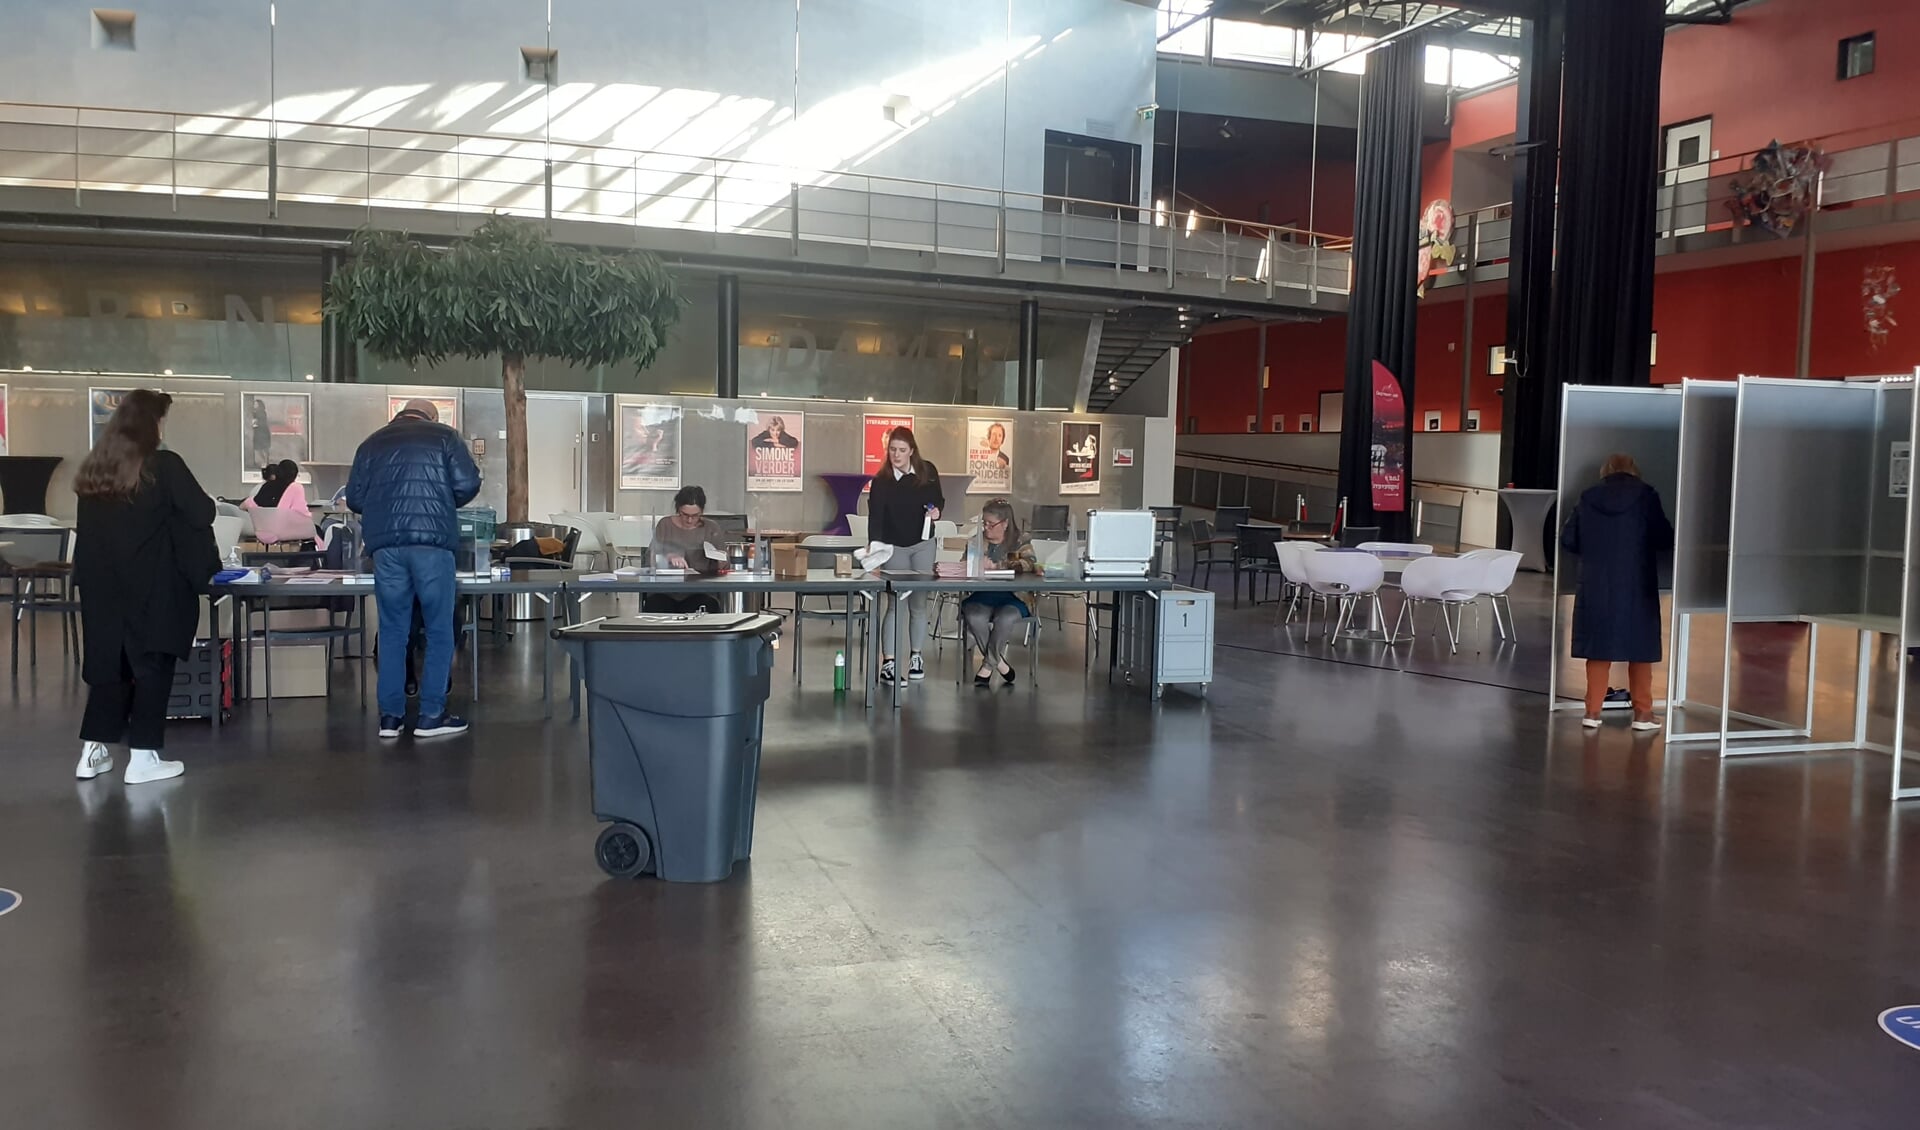 Er waren maandag en dinsdag vier stembureaus geopend, waaronder De Meerpaal.